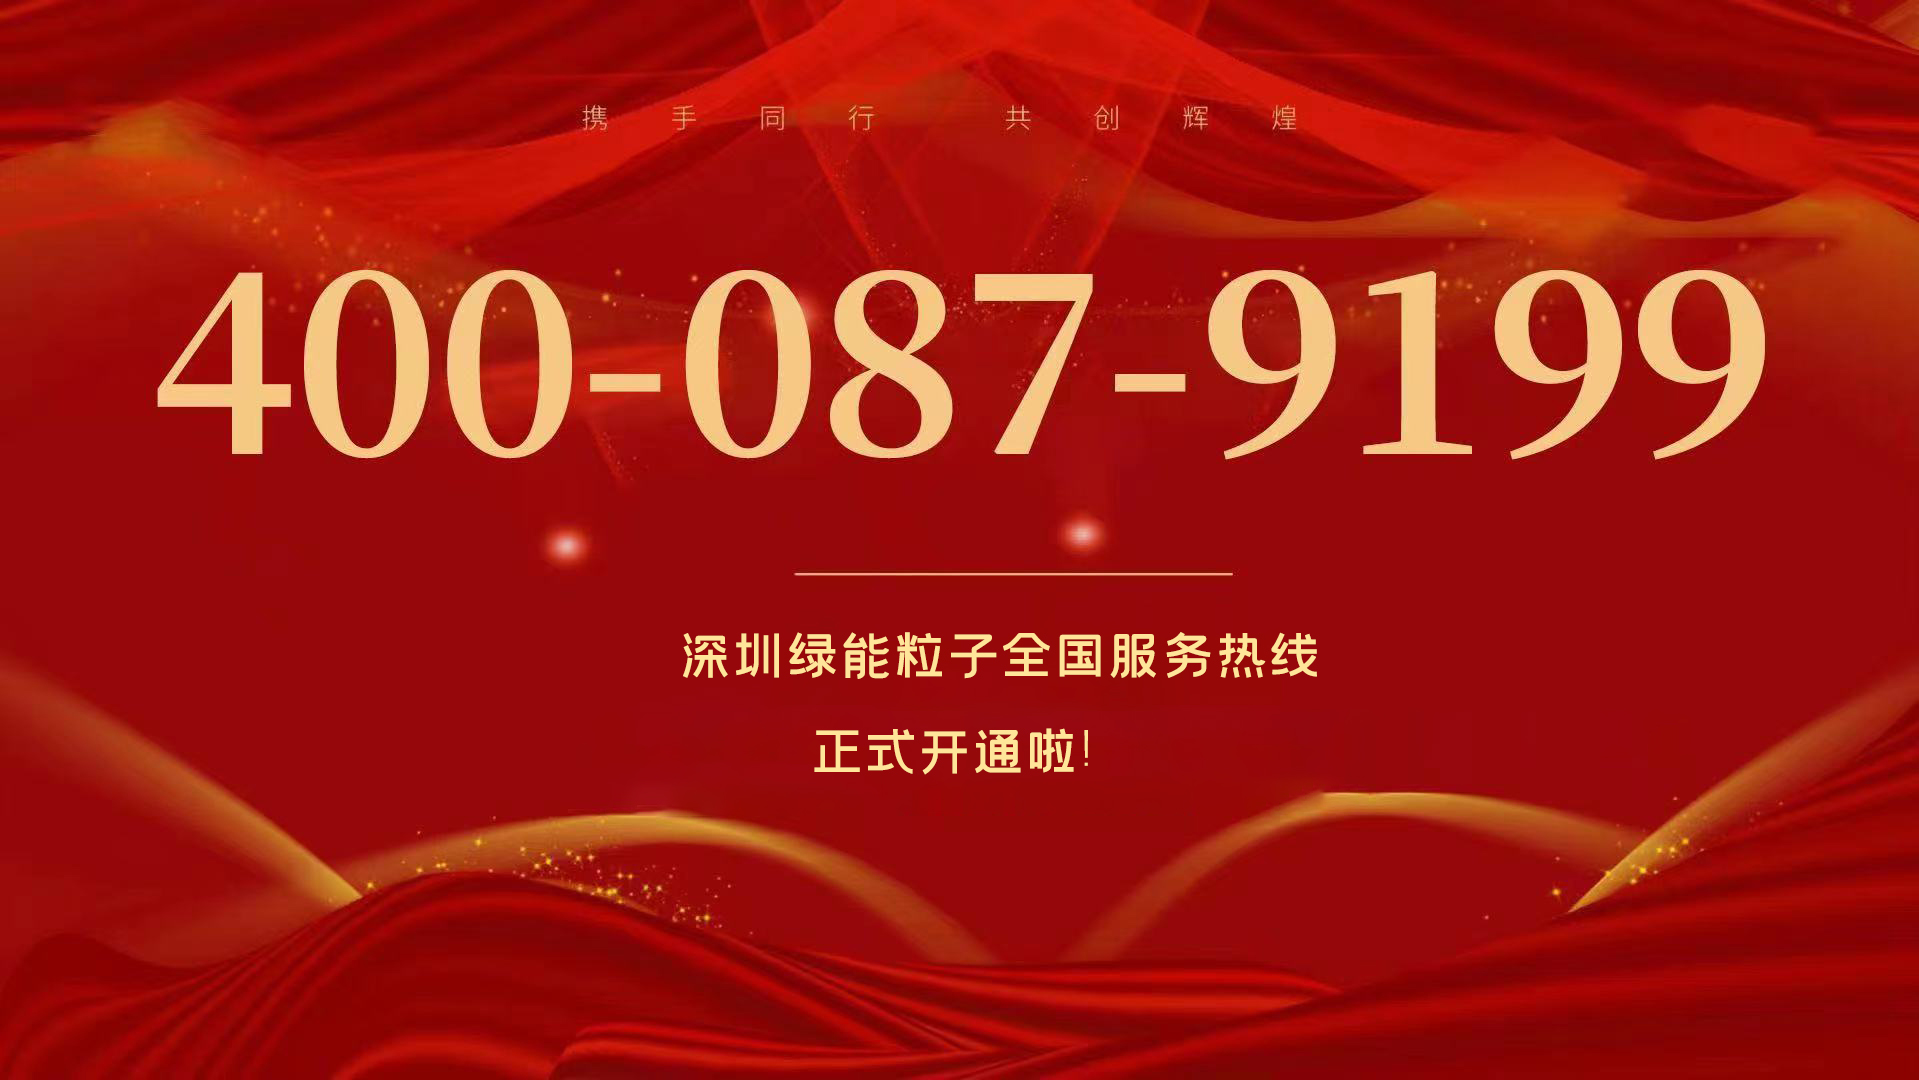  深圳綠能粒子全國服務熱線400-087-9199正式開通啦！ 